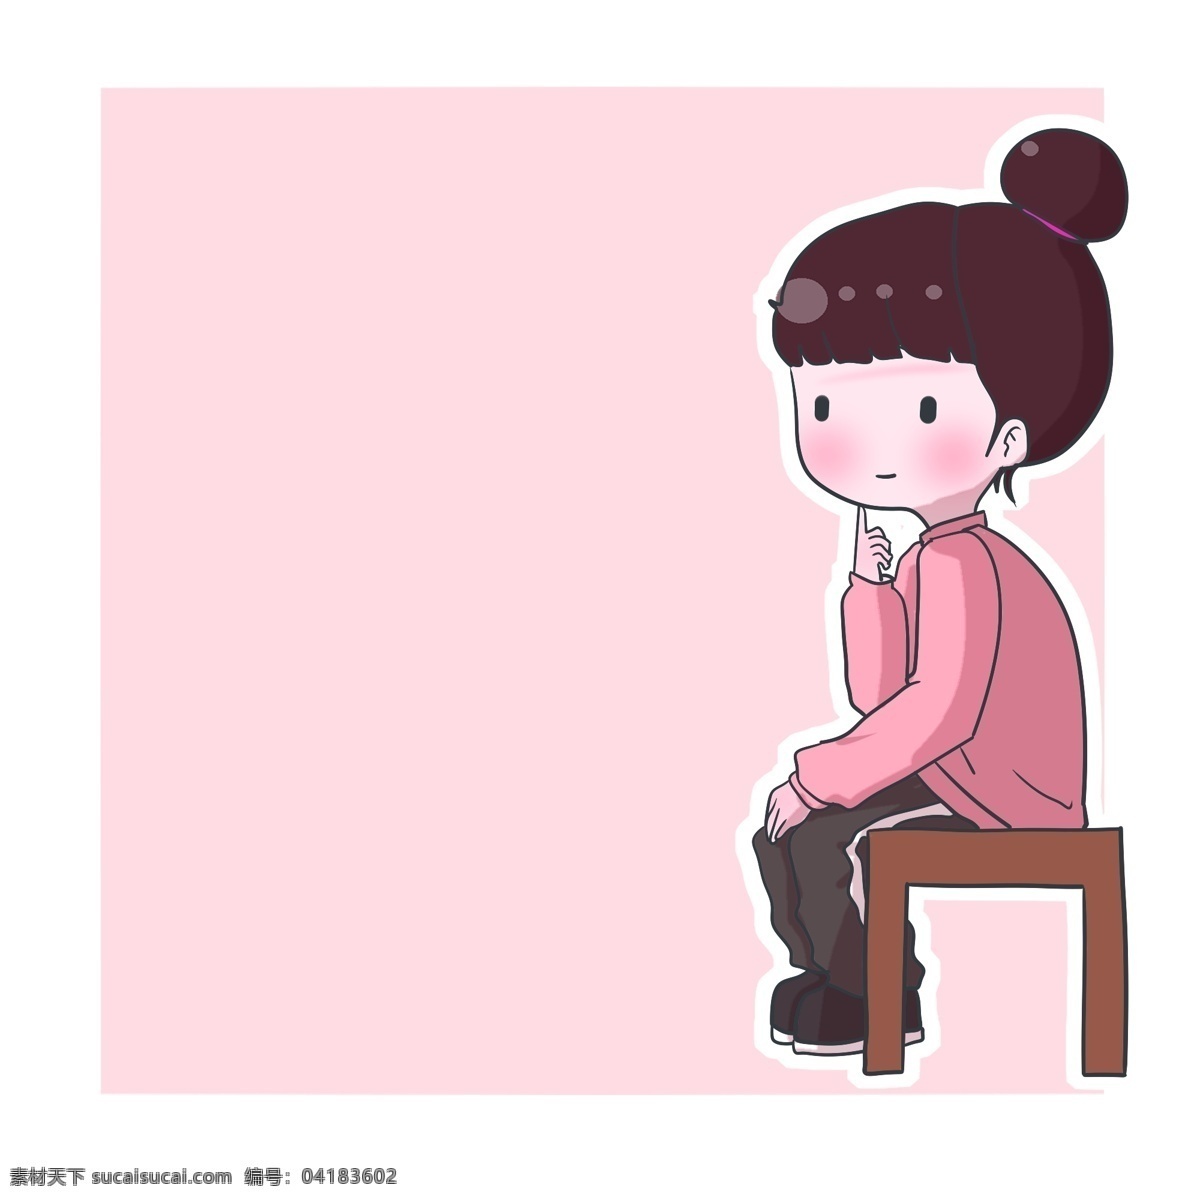 思考 问题 男孩 粉色 边框 坐着的小人 粉色方形边框 可爱人物边框 卡通小人 可爱边框 思考问题男孩